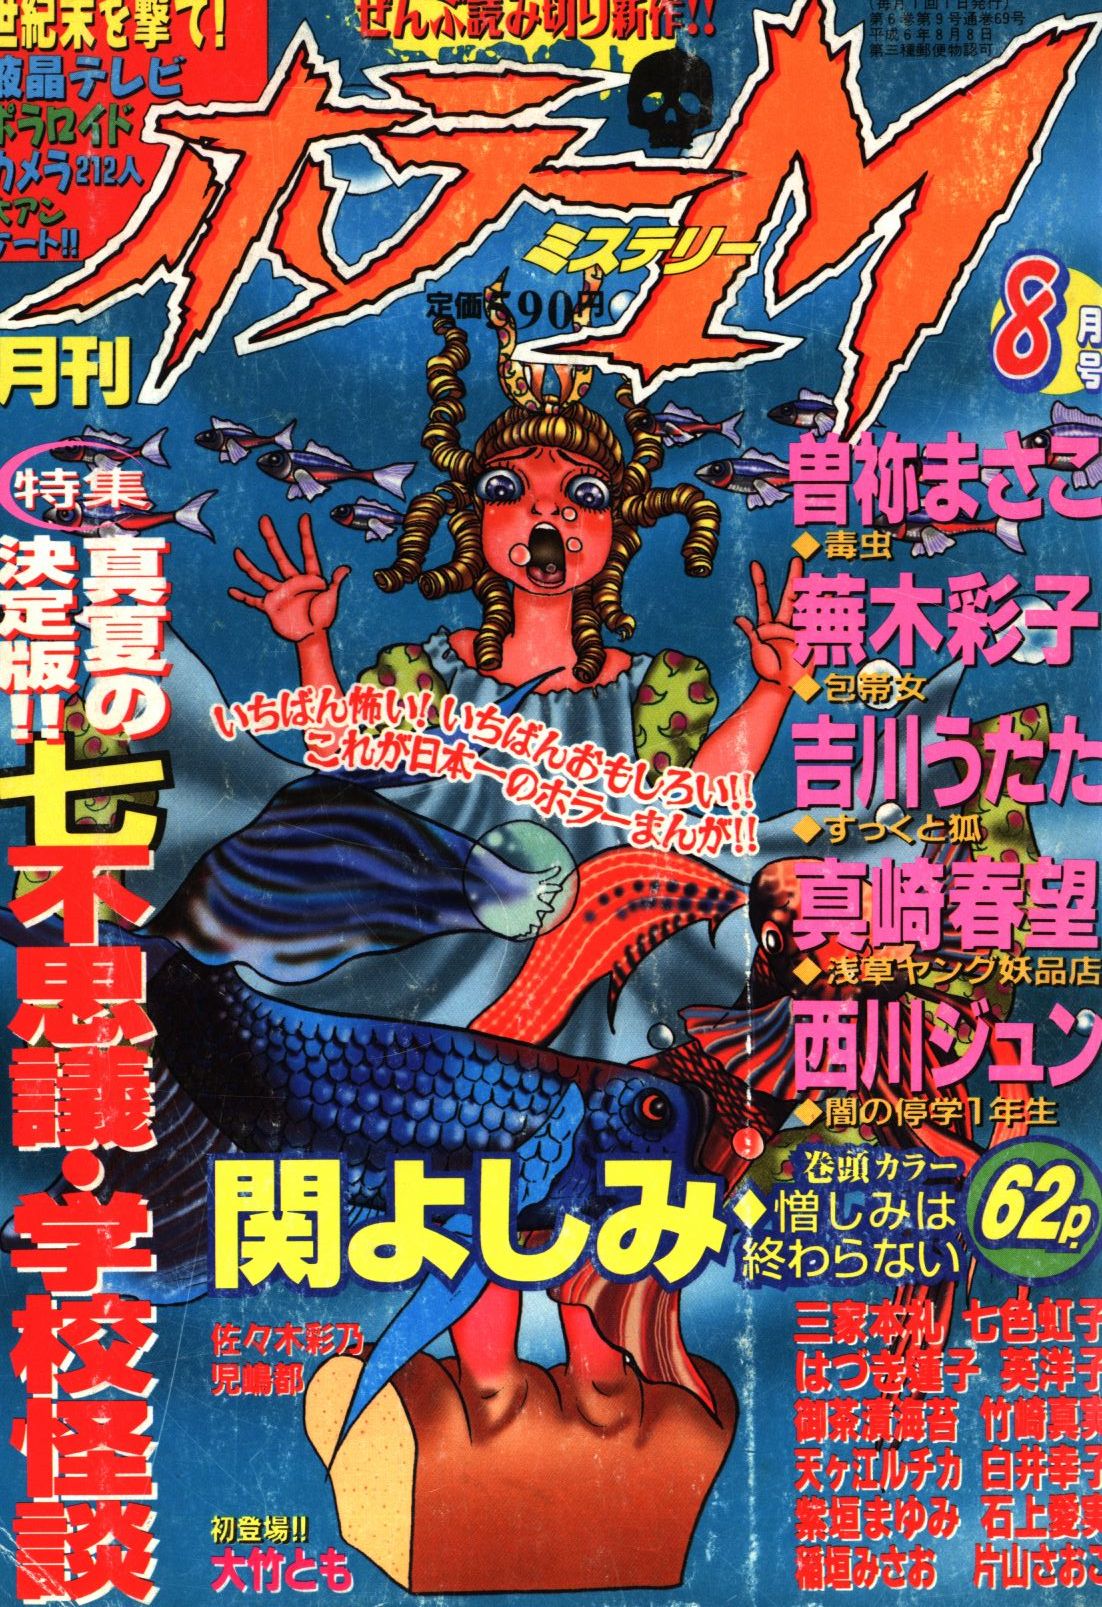 ホラーS vol.1 月刊ホラーM 8/8増刊号 ©︎ぶんか社 1997-